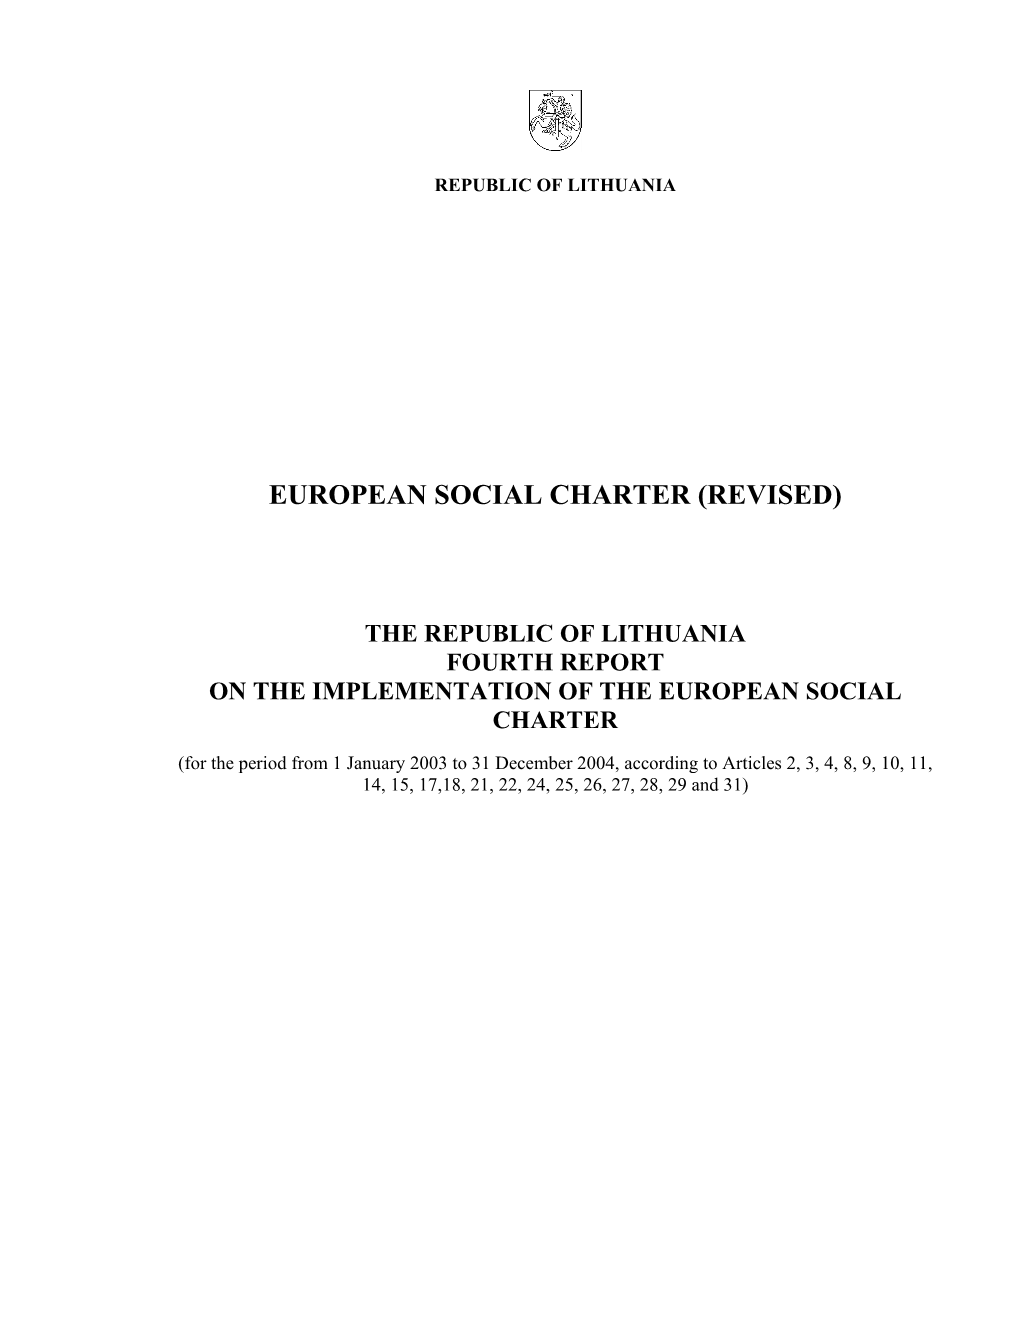 European Social Charter (Revised)